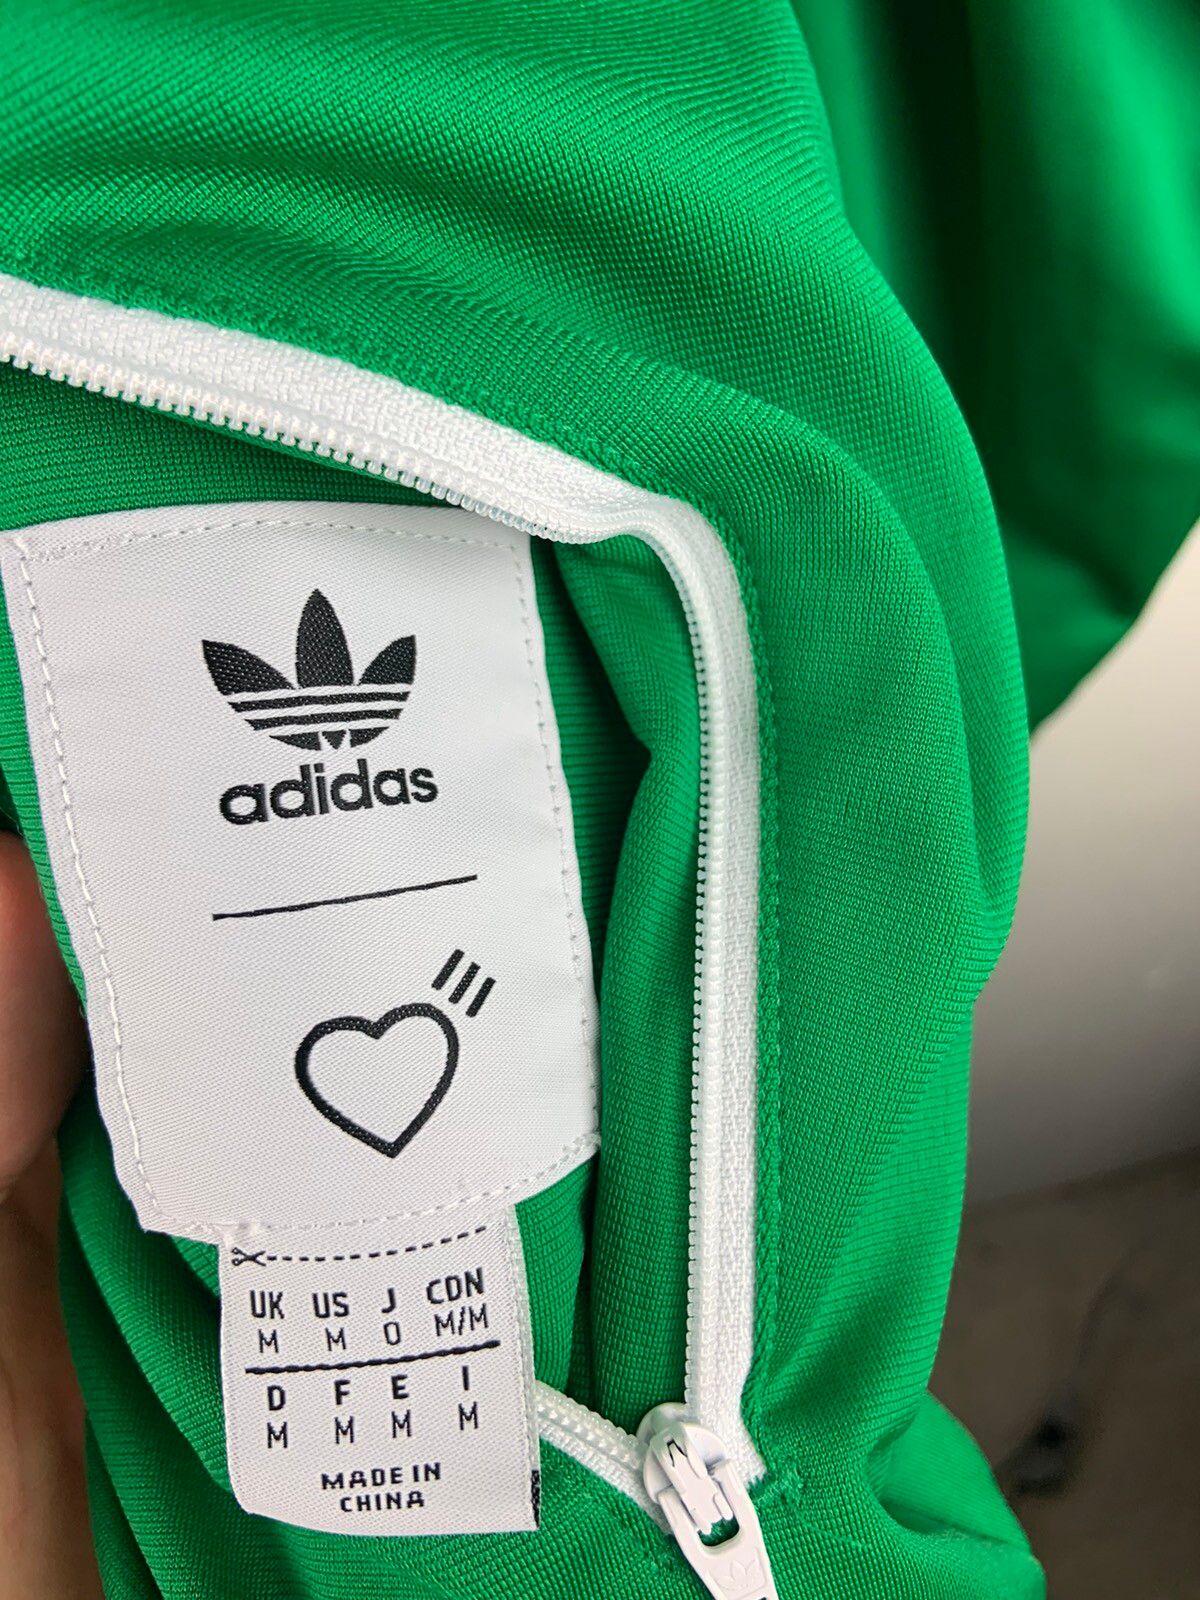 Adidas Human made adidas Firebird jacket Size US M / EU 48-50 / 2 - 4 Thumbnail